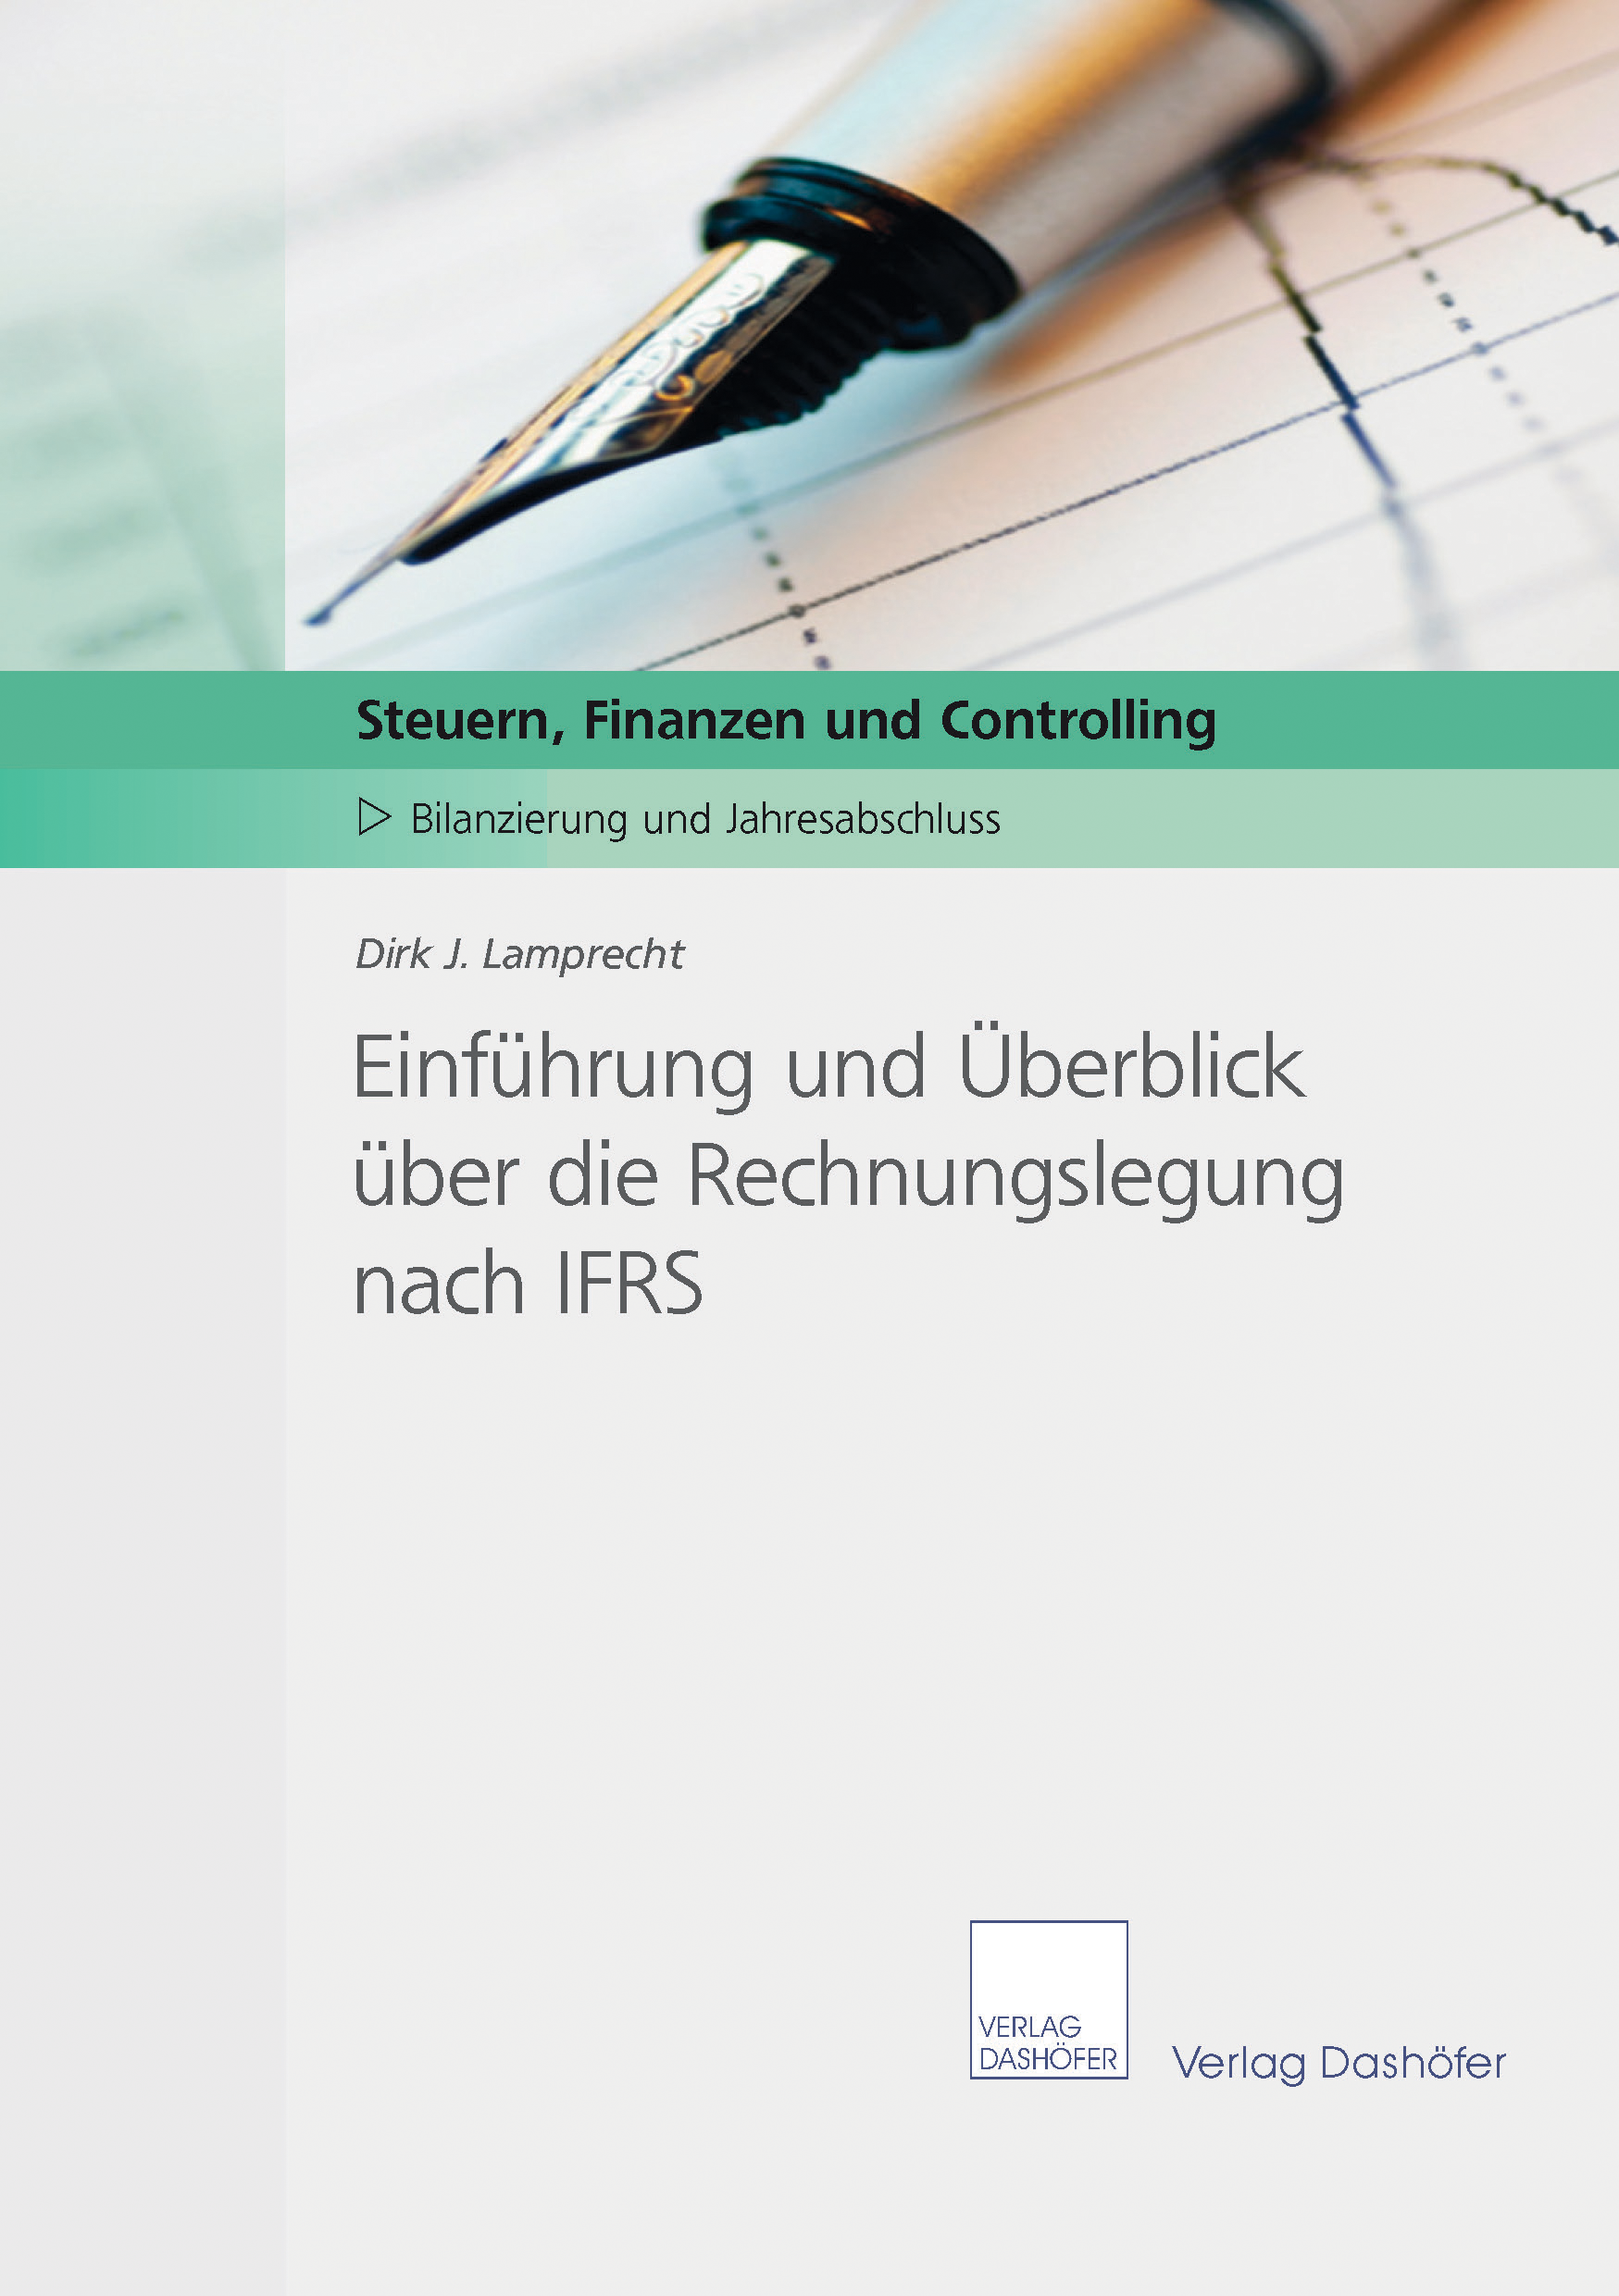 Einführung und Überblick über die Rechnungslegung nach IFRS